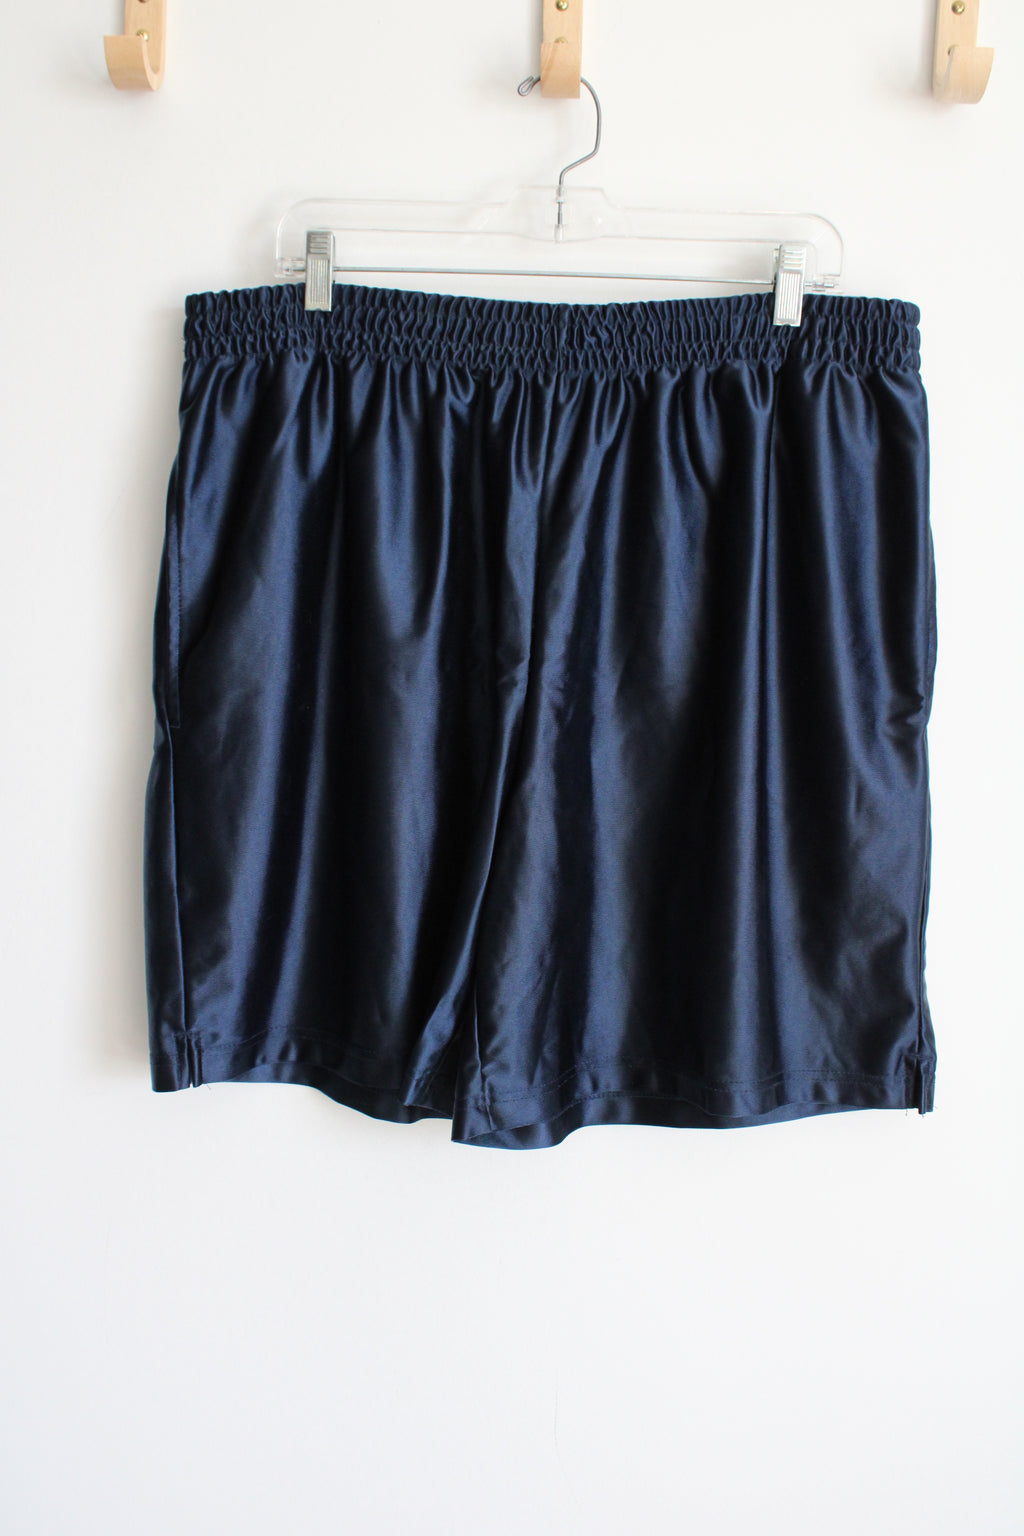 Athletic Works Dark Blue Athletic Shorts | XL